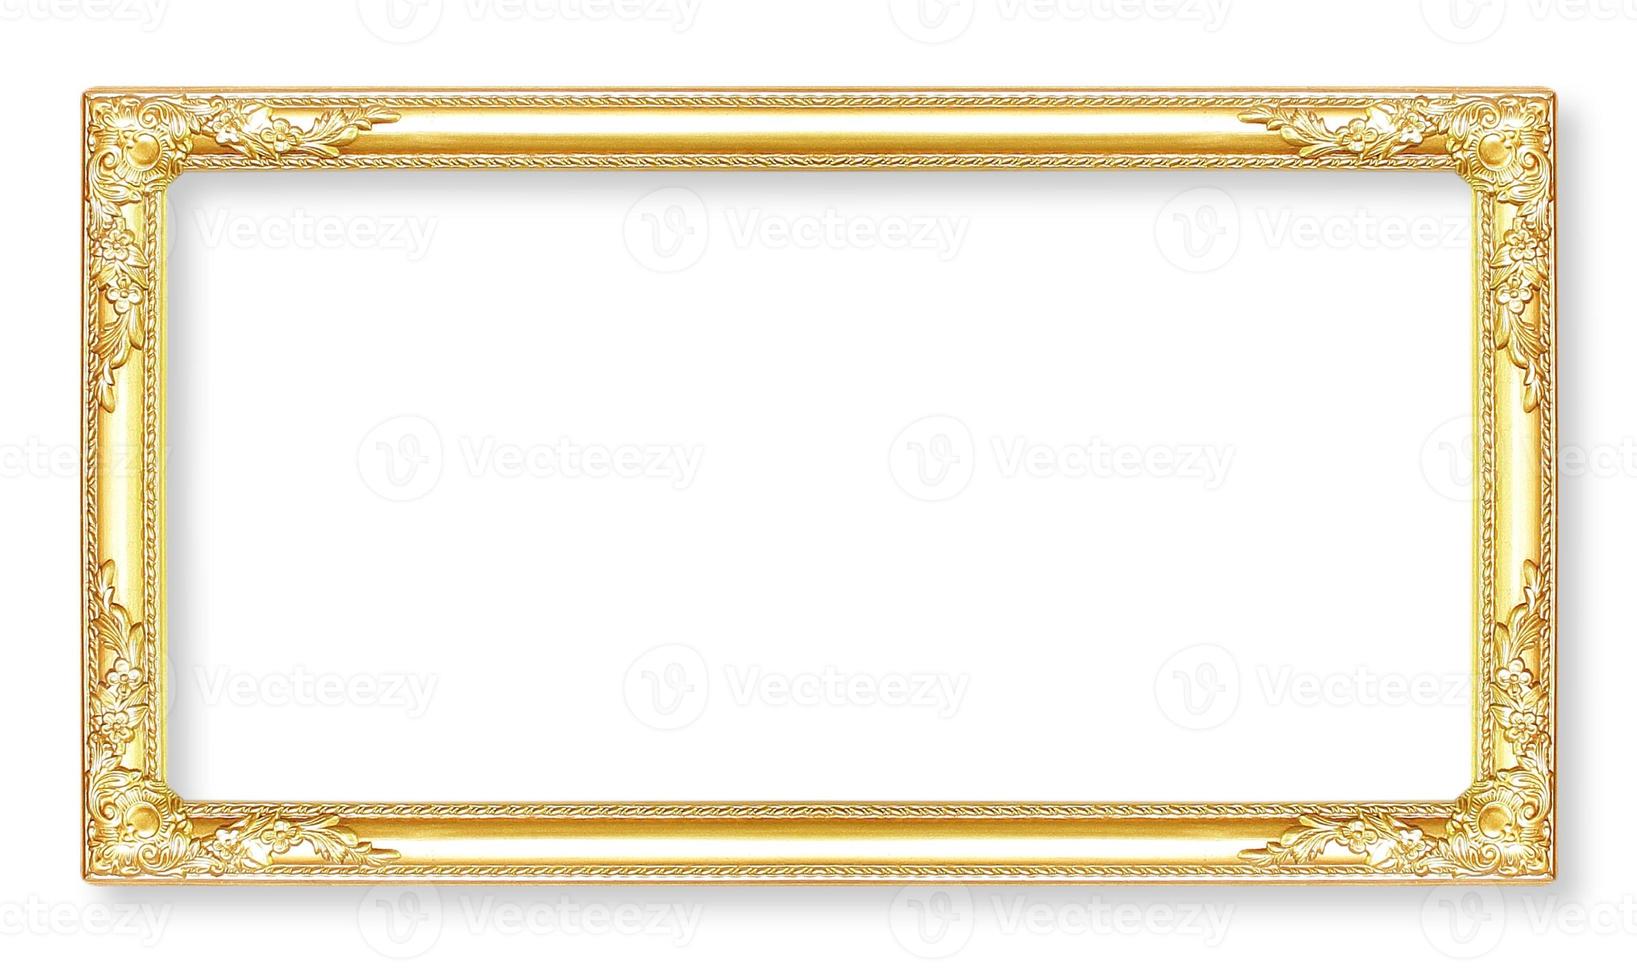 molduras de ouro. isolado em fundo branco foto